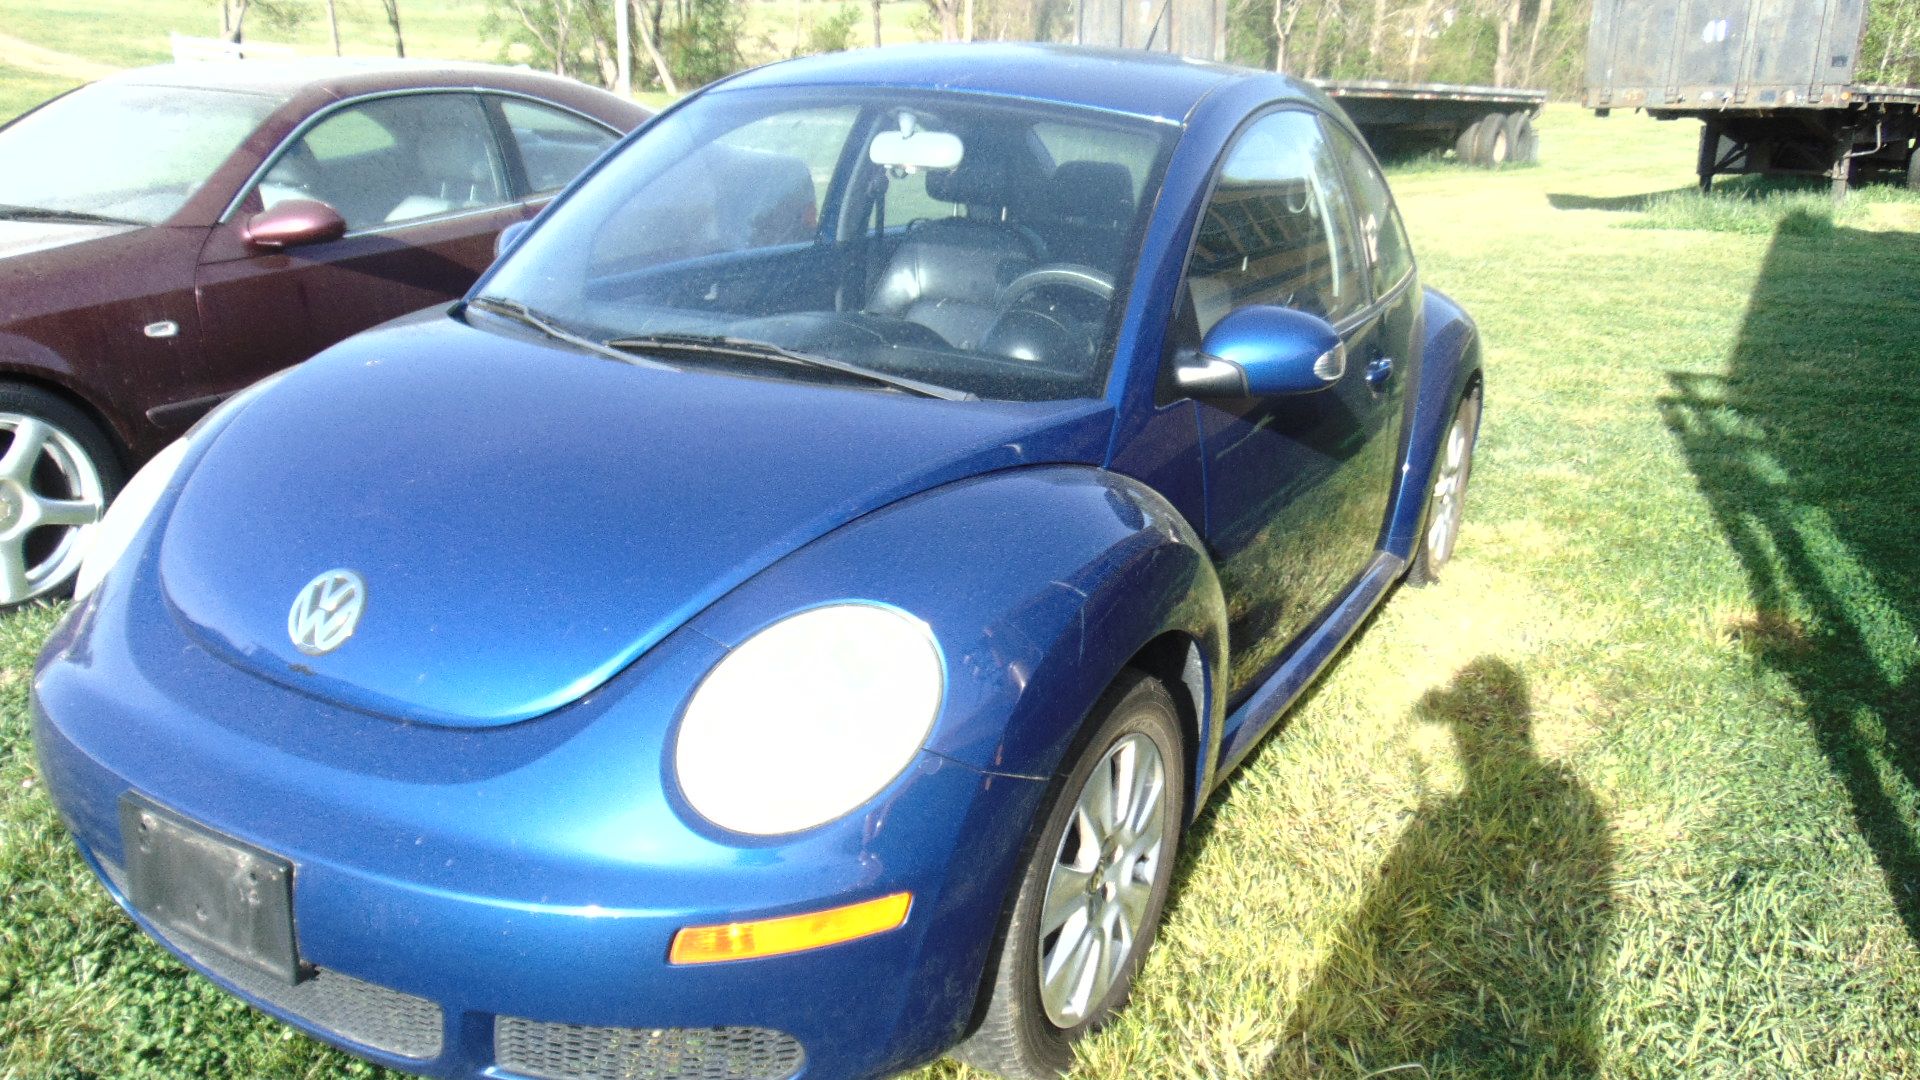 Volkswagen Bug - Image 4 of 4